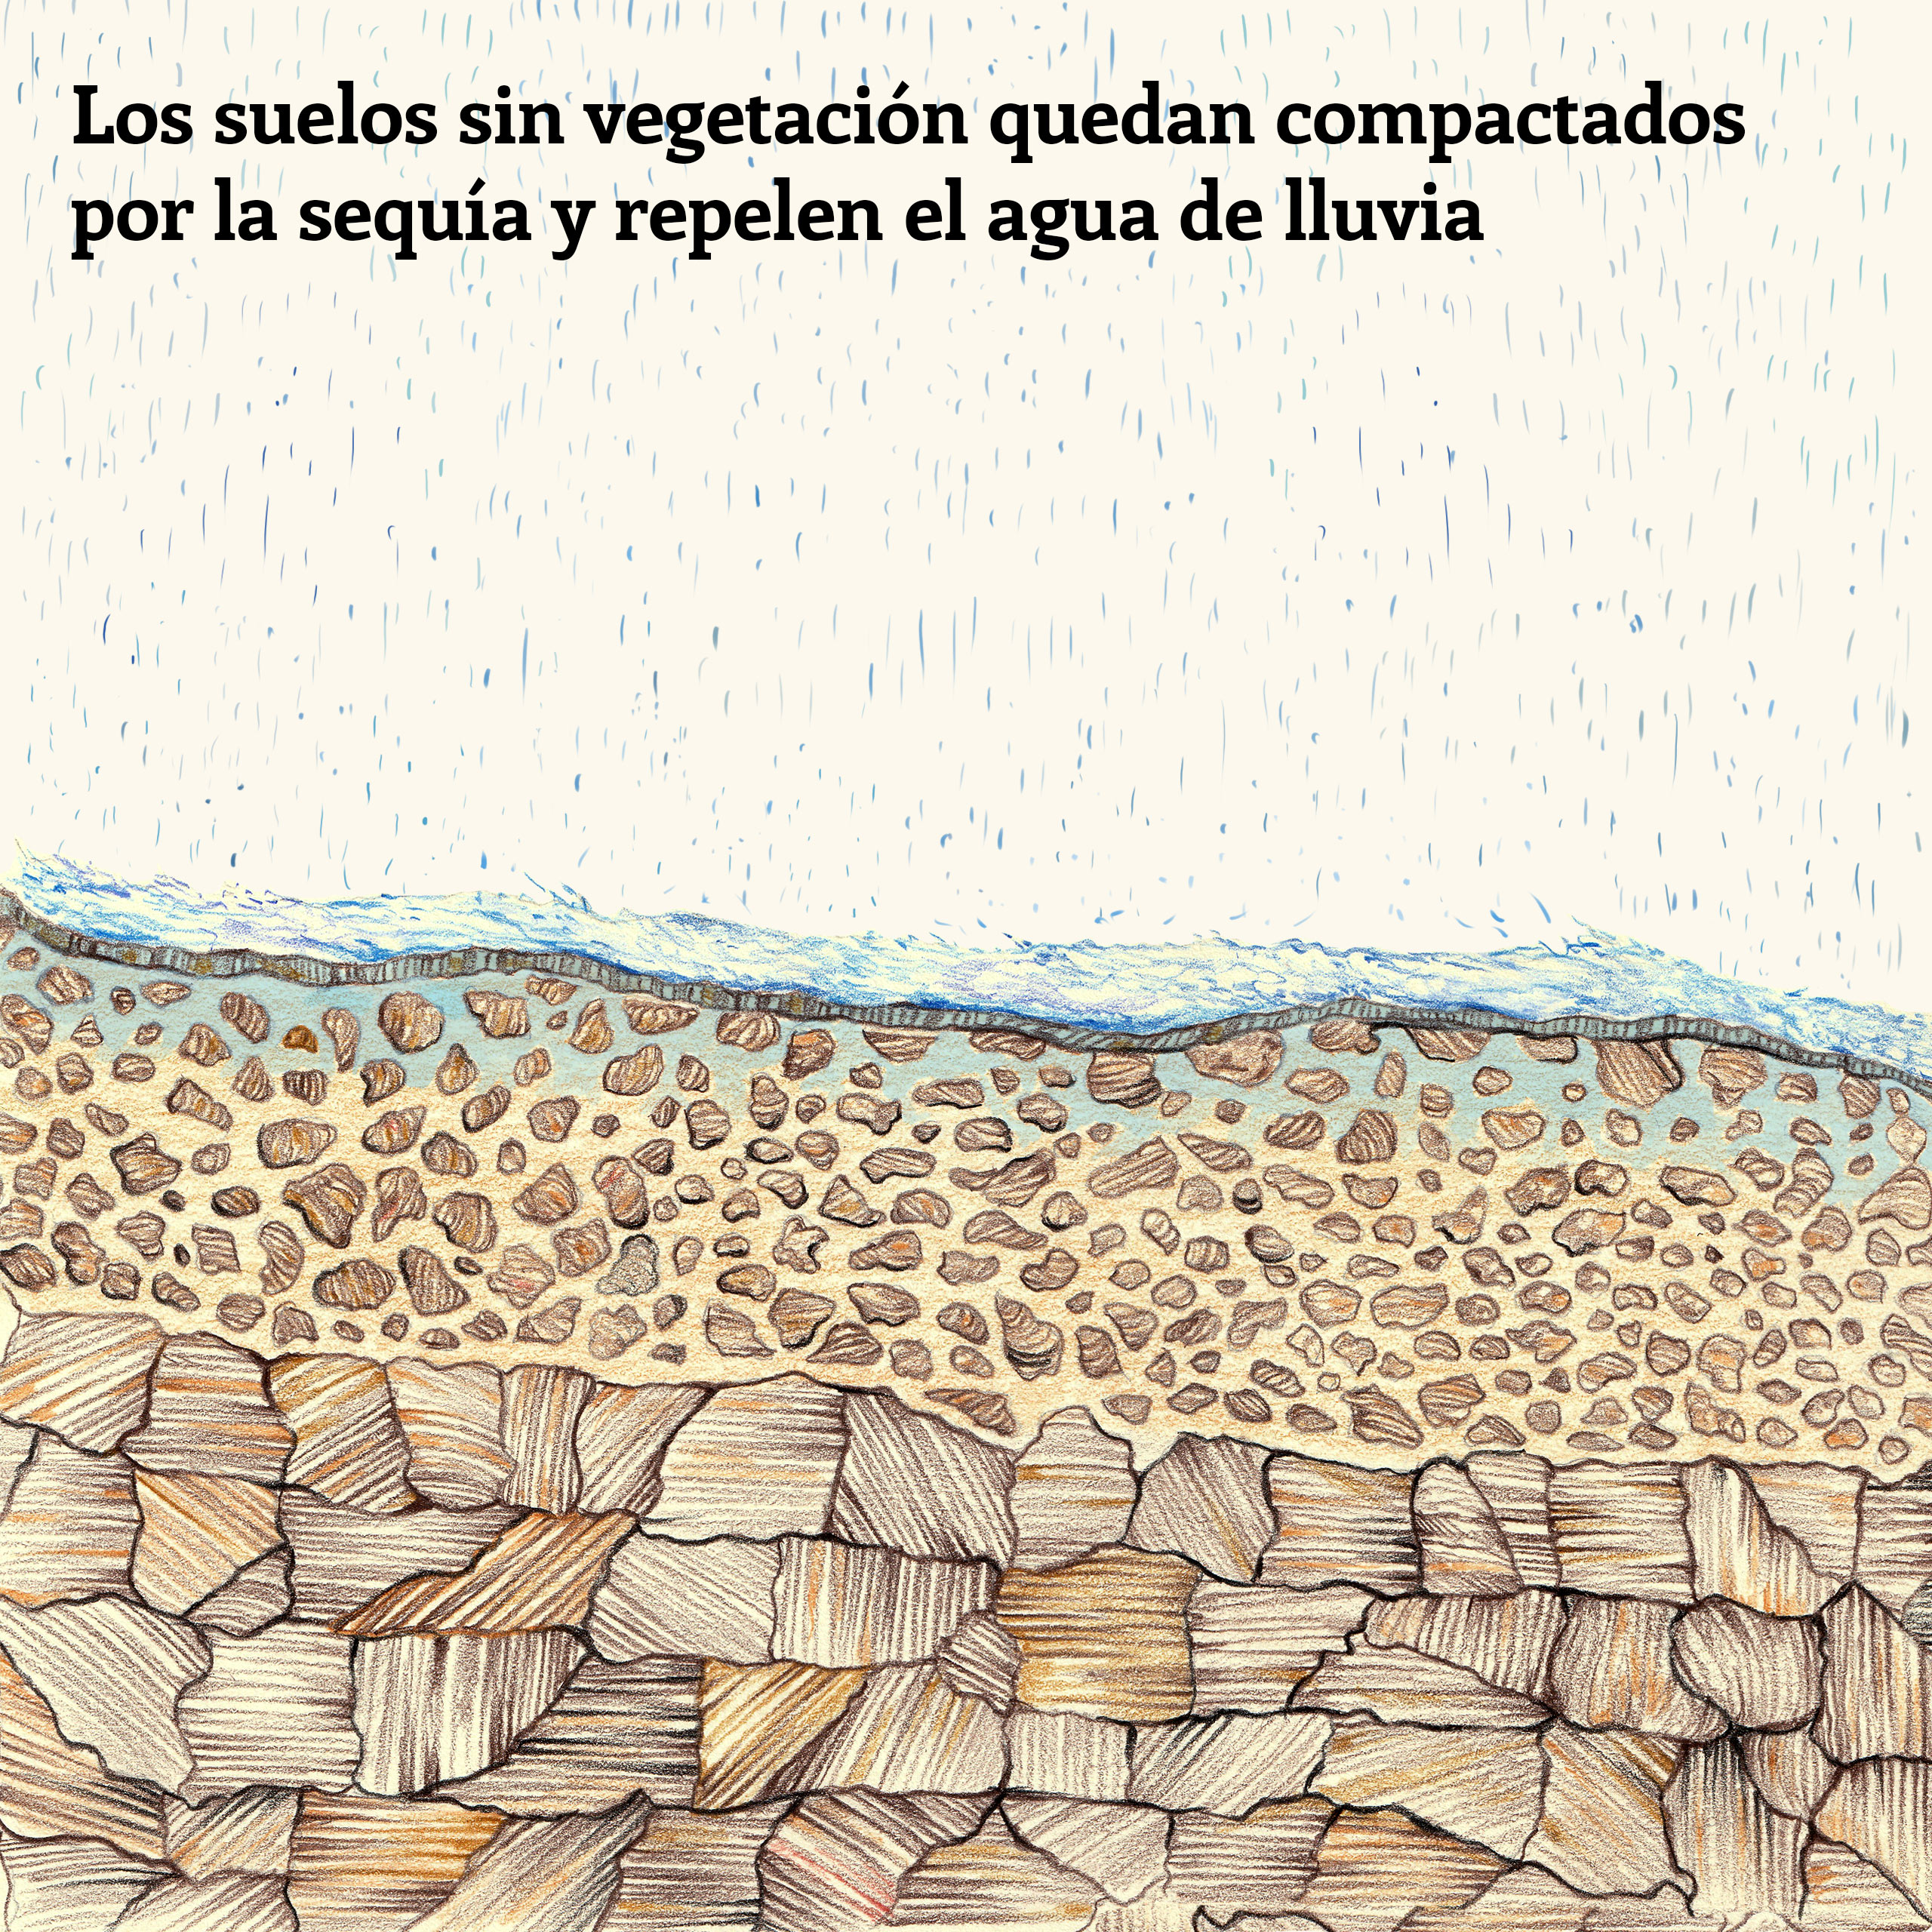 Ilustración que muestra cómo los años de sequía han compactado el suelo, provocando la repelencia del agua y posibles inundaciones cuando lleguen las lluvias.